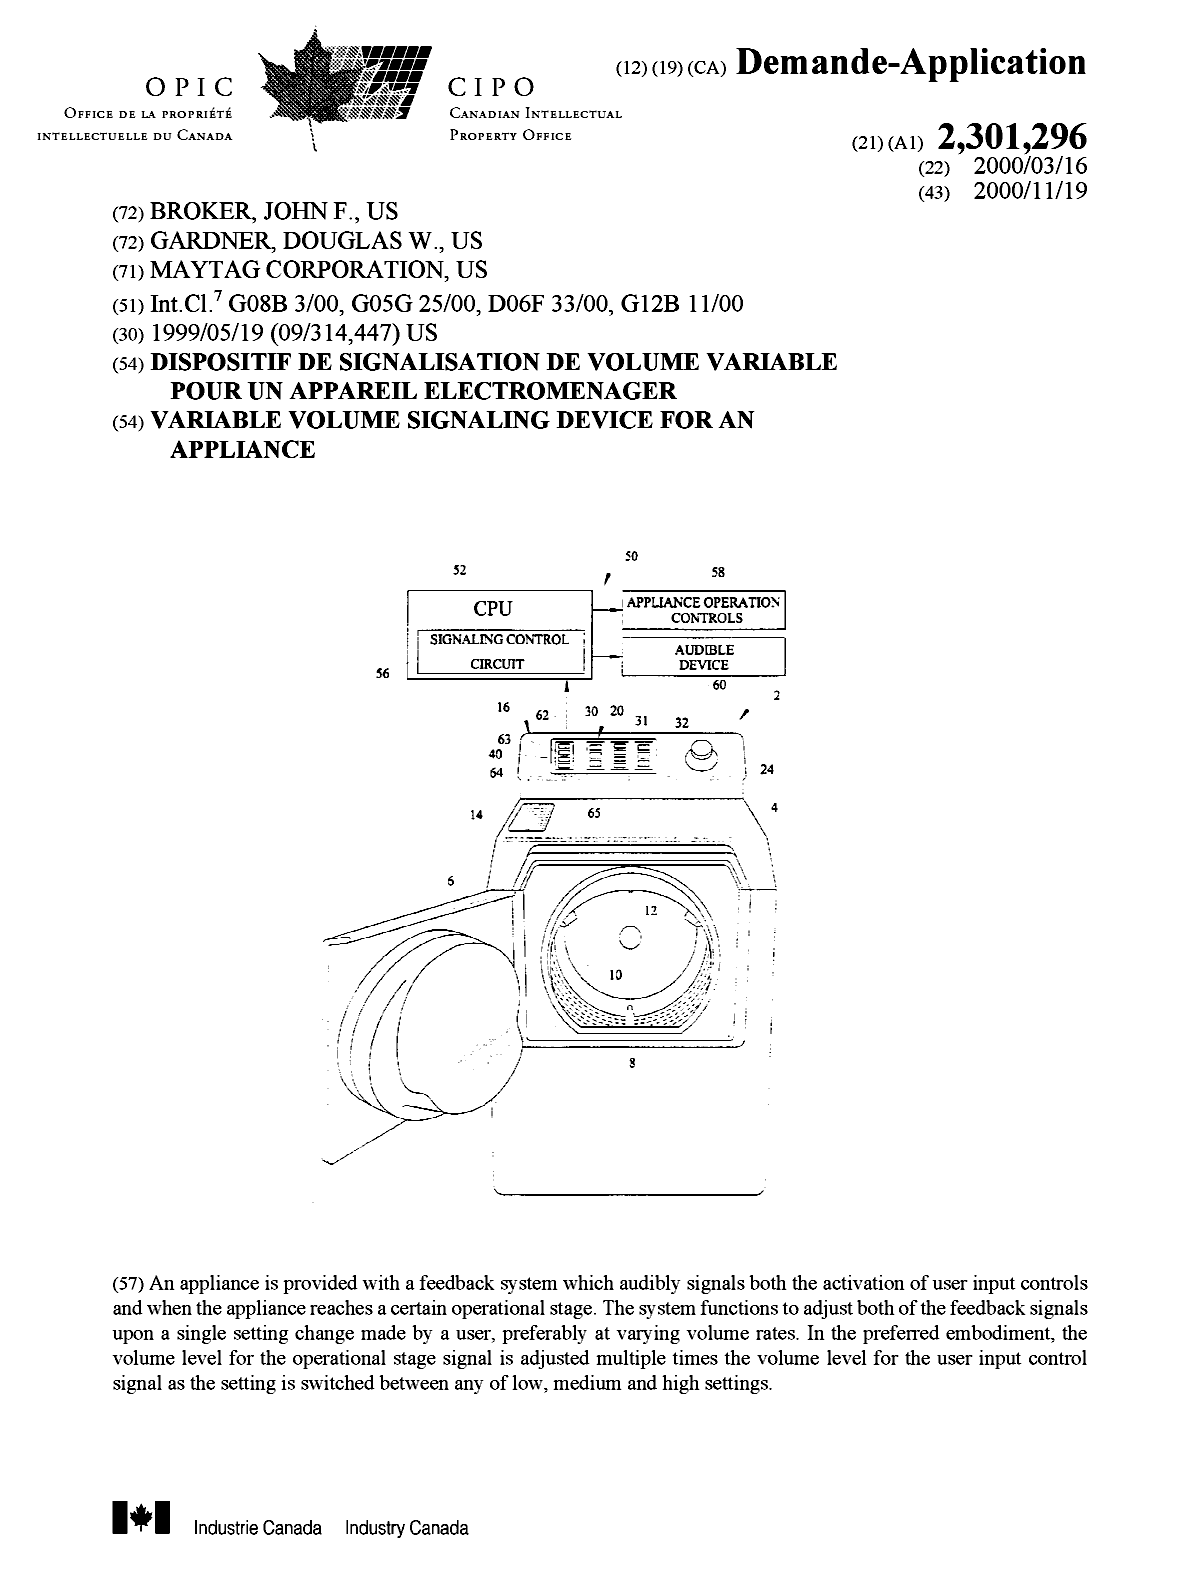 Document de brevet canadien 2301296. Page couverture 20001114. Image 1 de 1